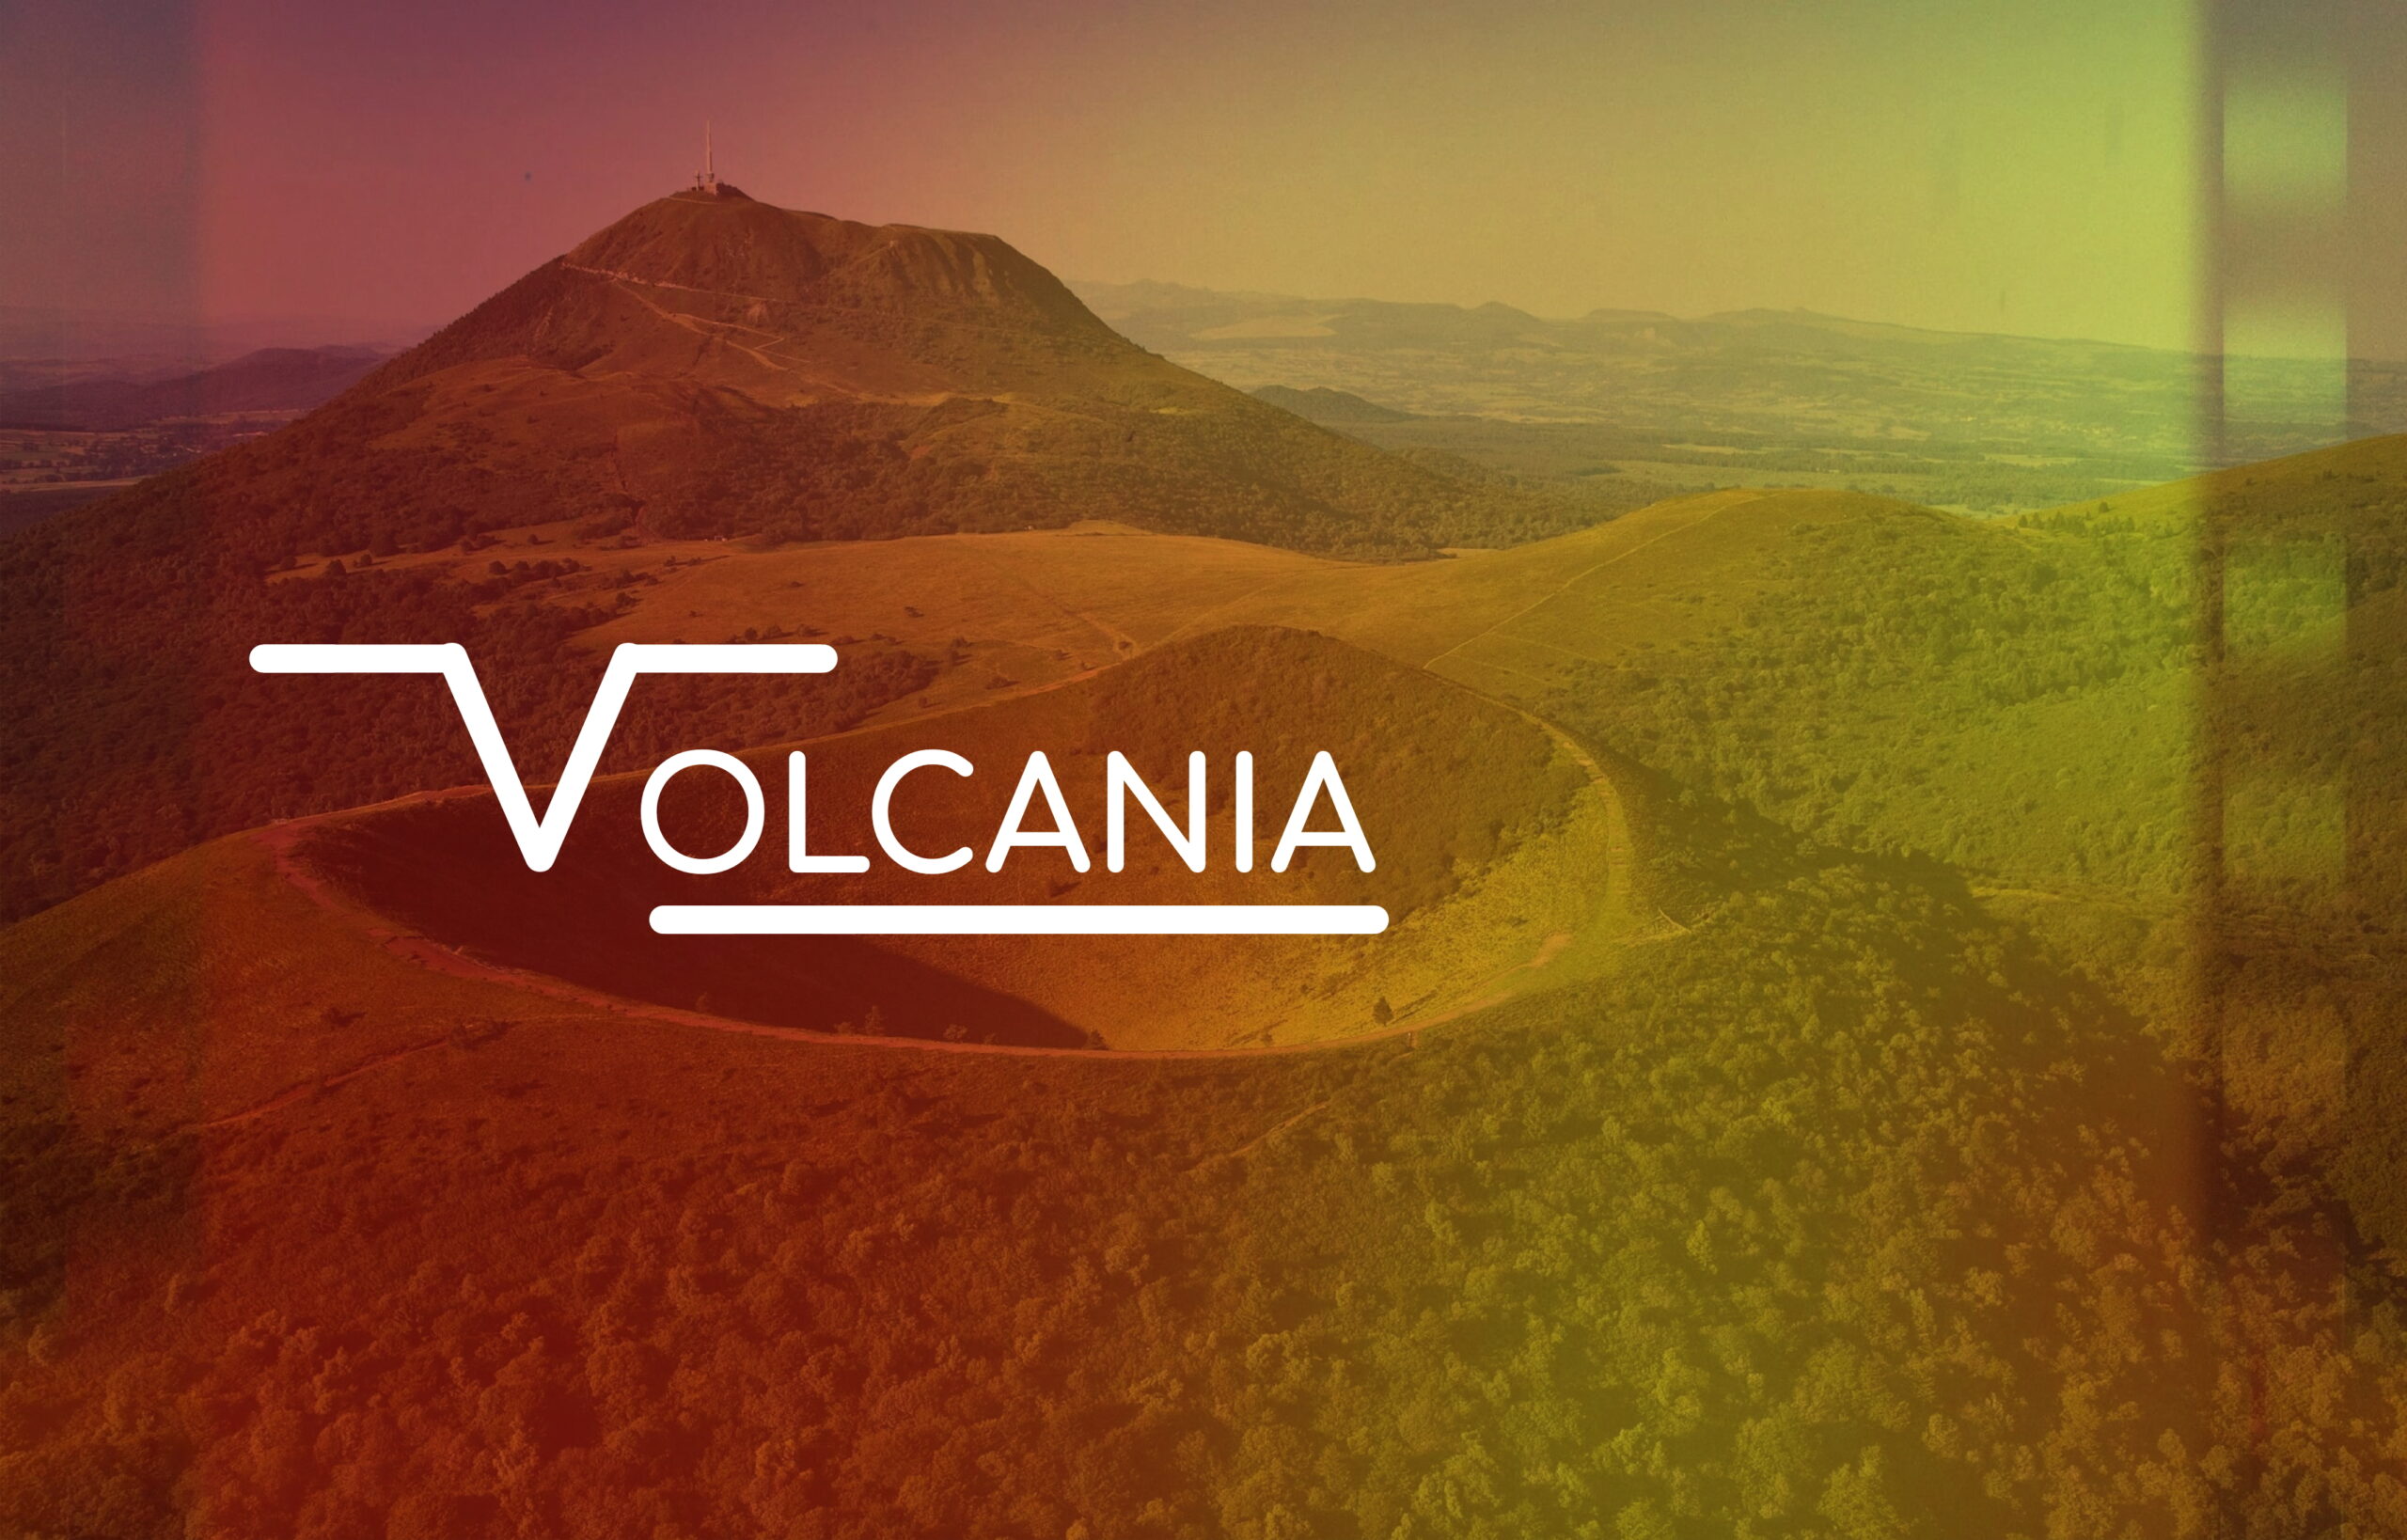 Il était une fois… le projet avorté Volcania